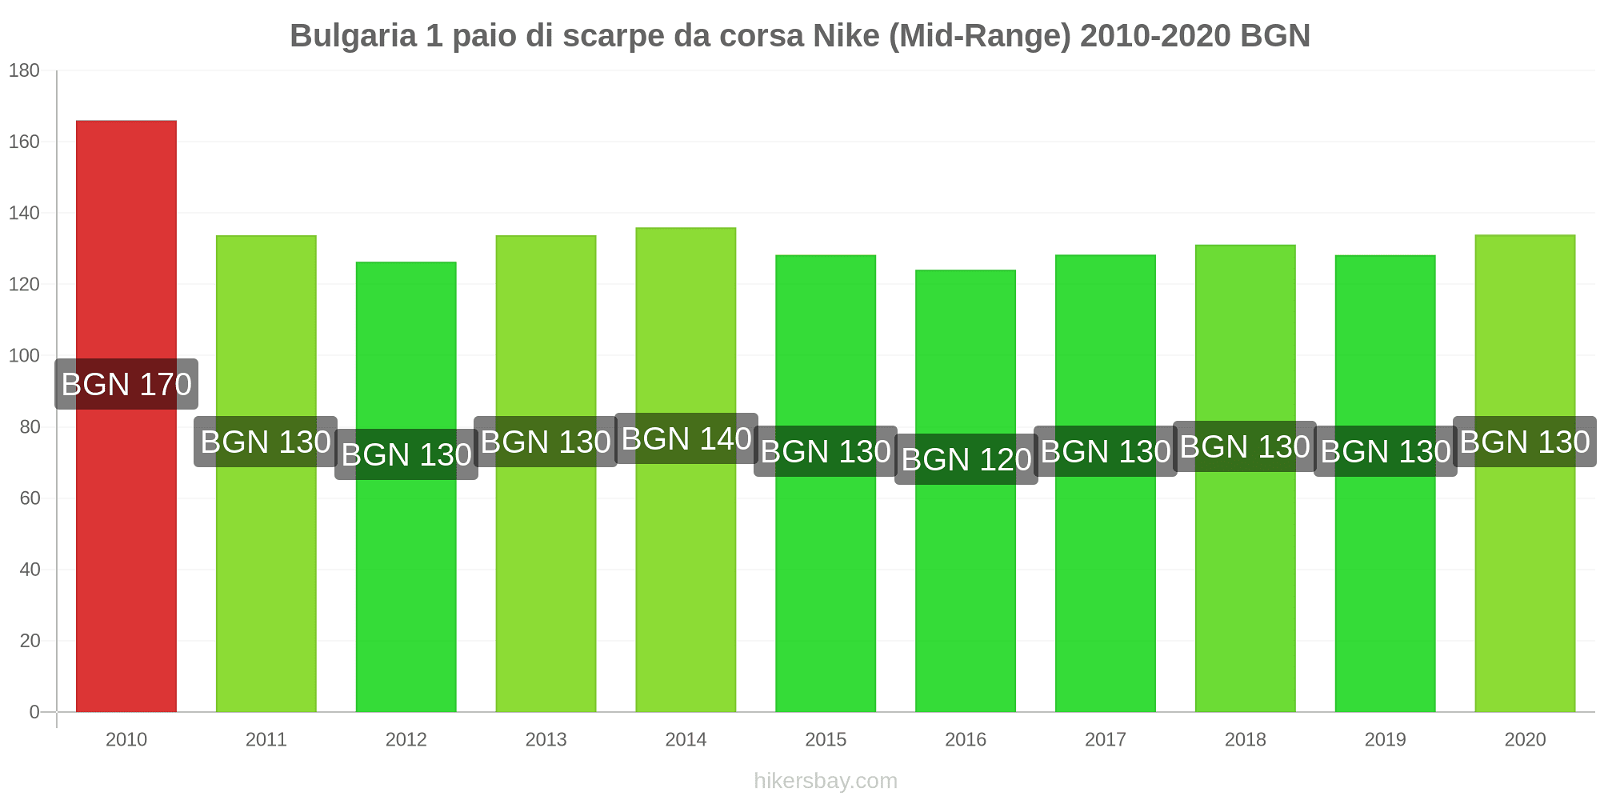 Bulgaria variazioni di prezzo 1 paio di scarpe da corsa Nike (simile) hikersbay.com